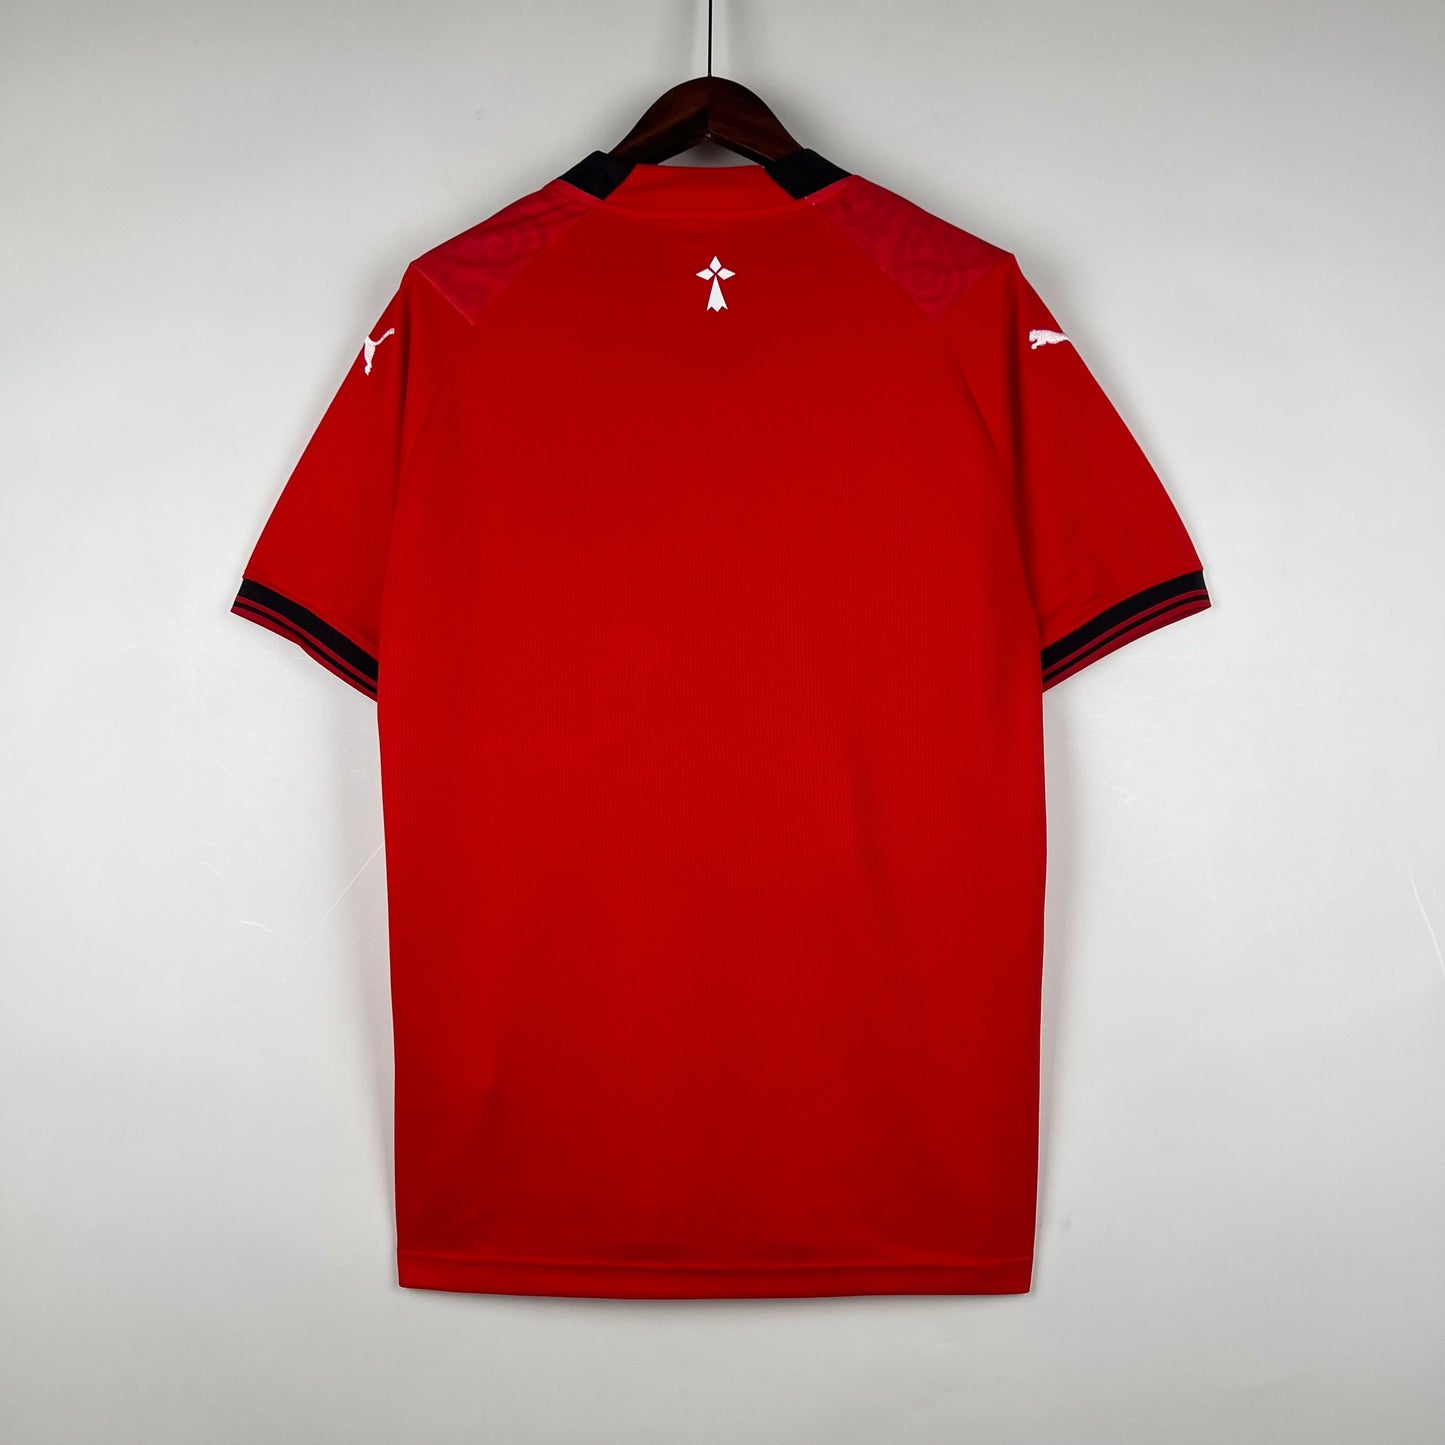 Camiseta Rennes Local 2023/24 | Versión fan